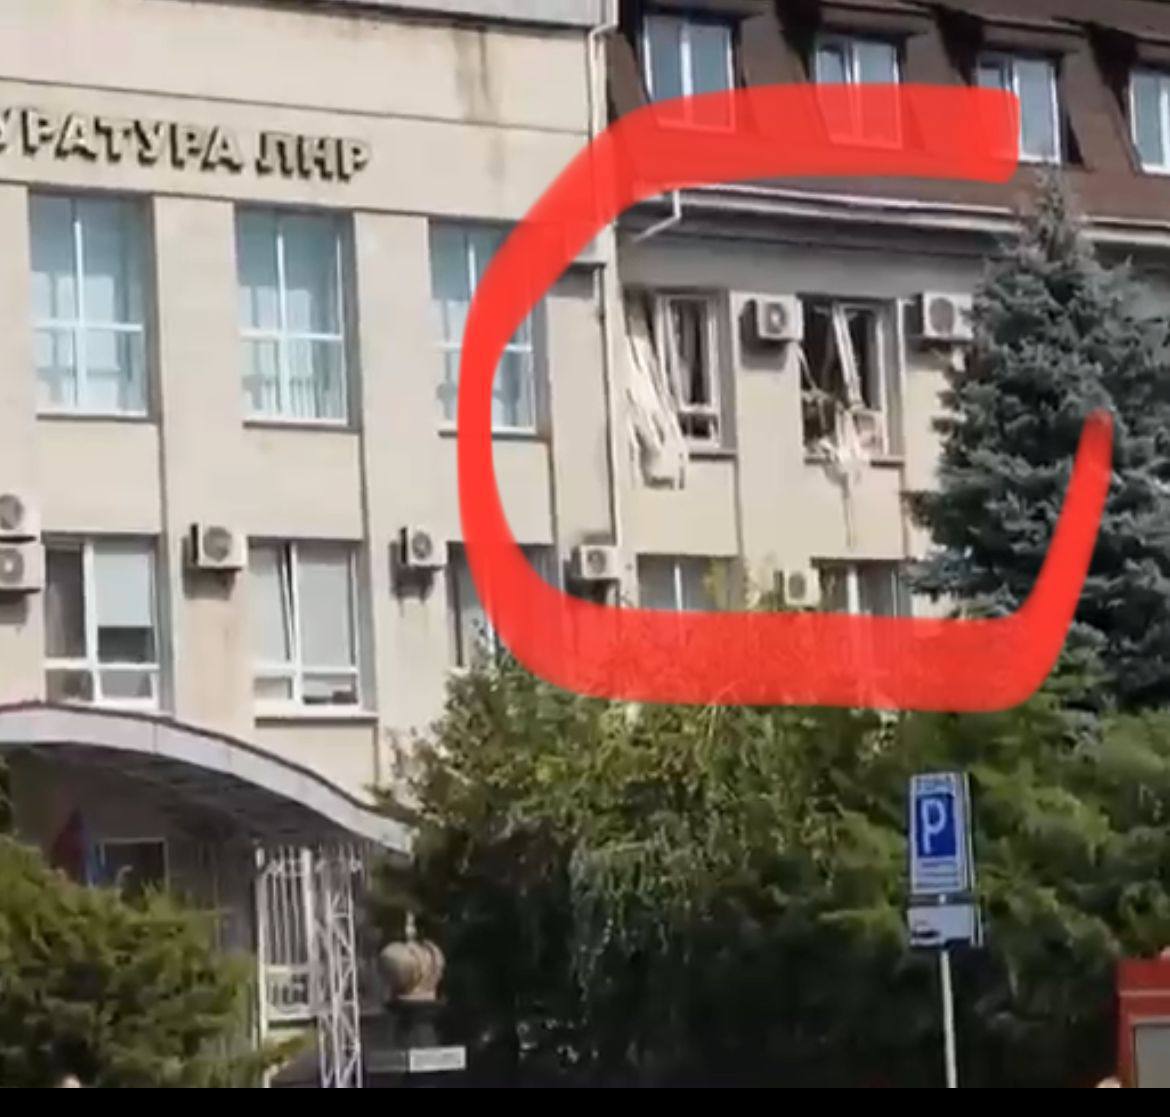 росСМИ сообщают, что взрыв в Луганске прогремел в кабинете "генпрокурора", он ранен